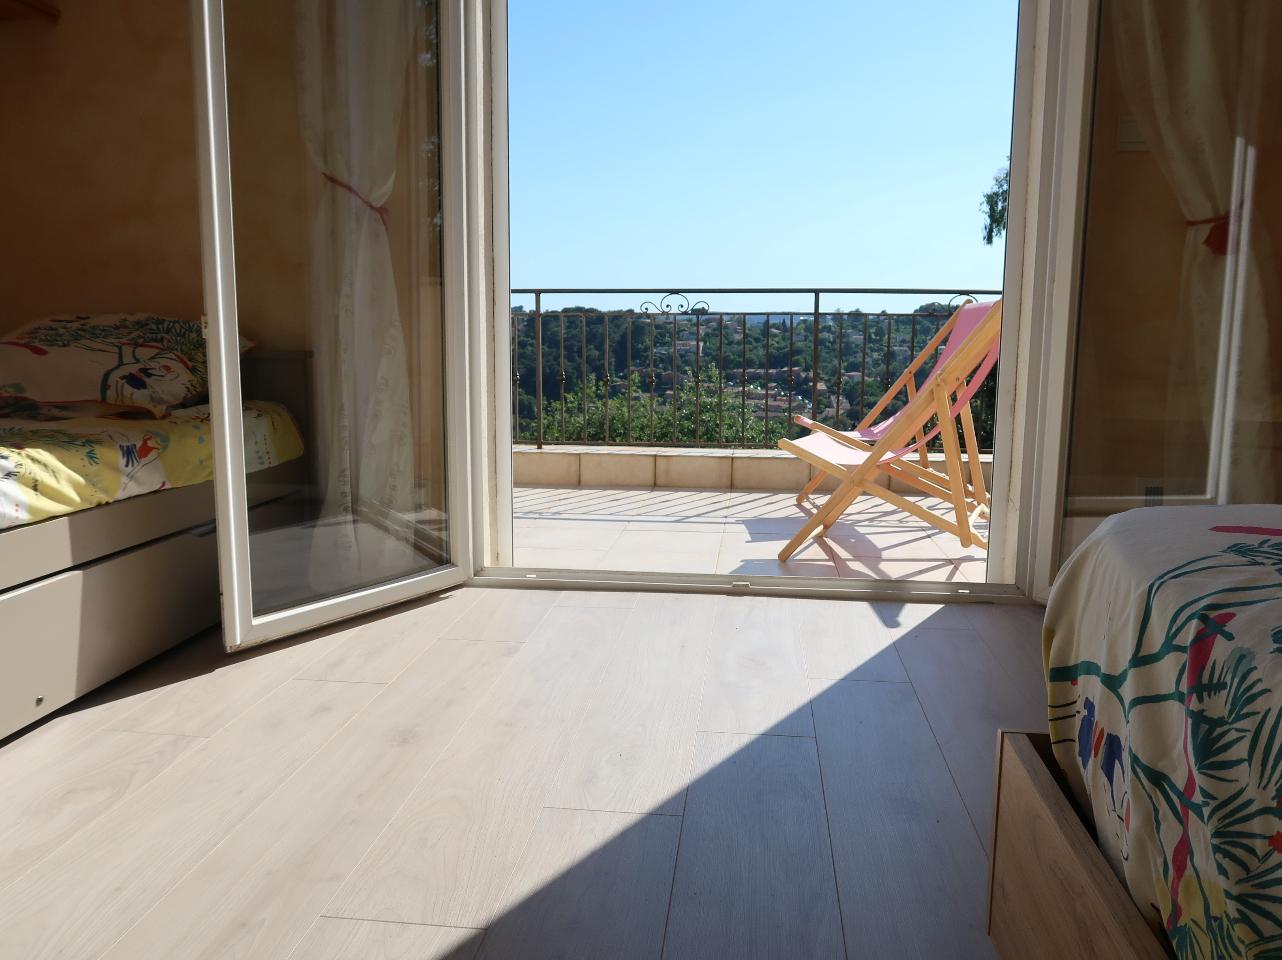 Hôte GreenGo: Ciel d'Azur, mer et nature (haut de villa plein ciel - jardin privé plein pied) - Image 14